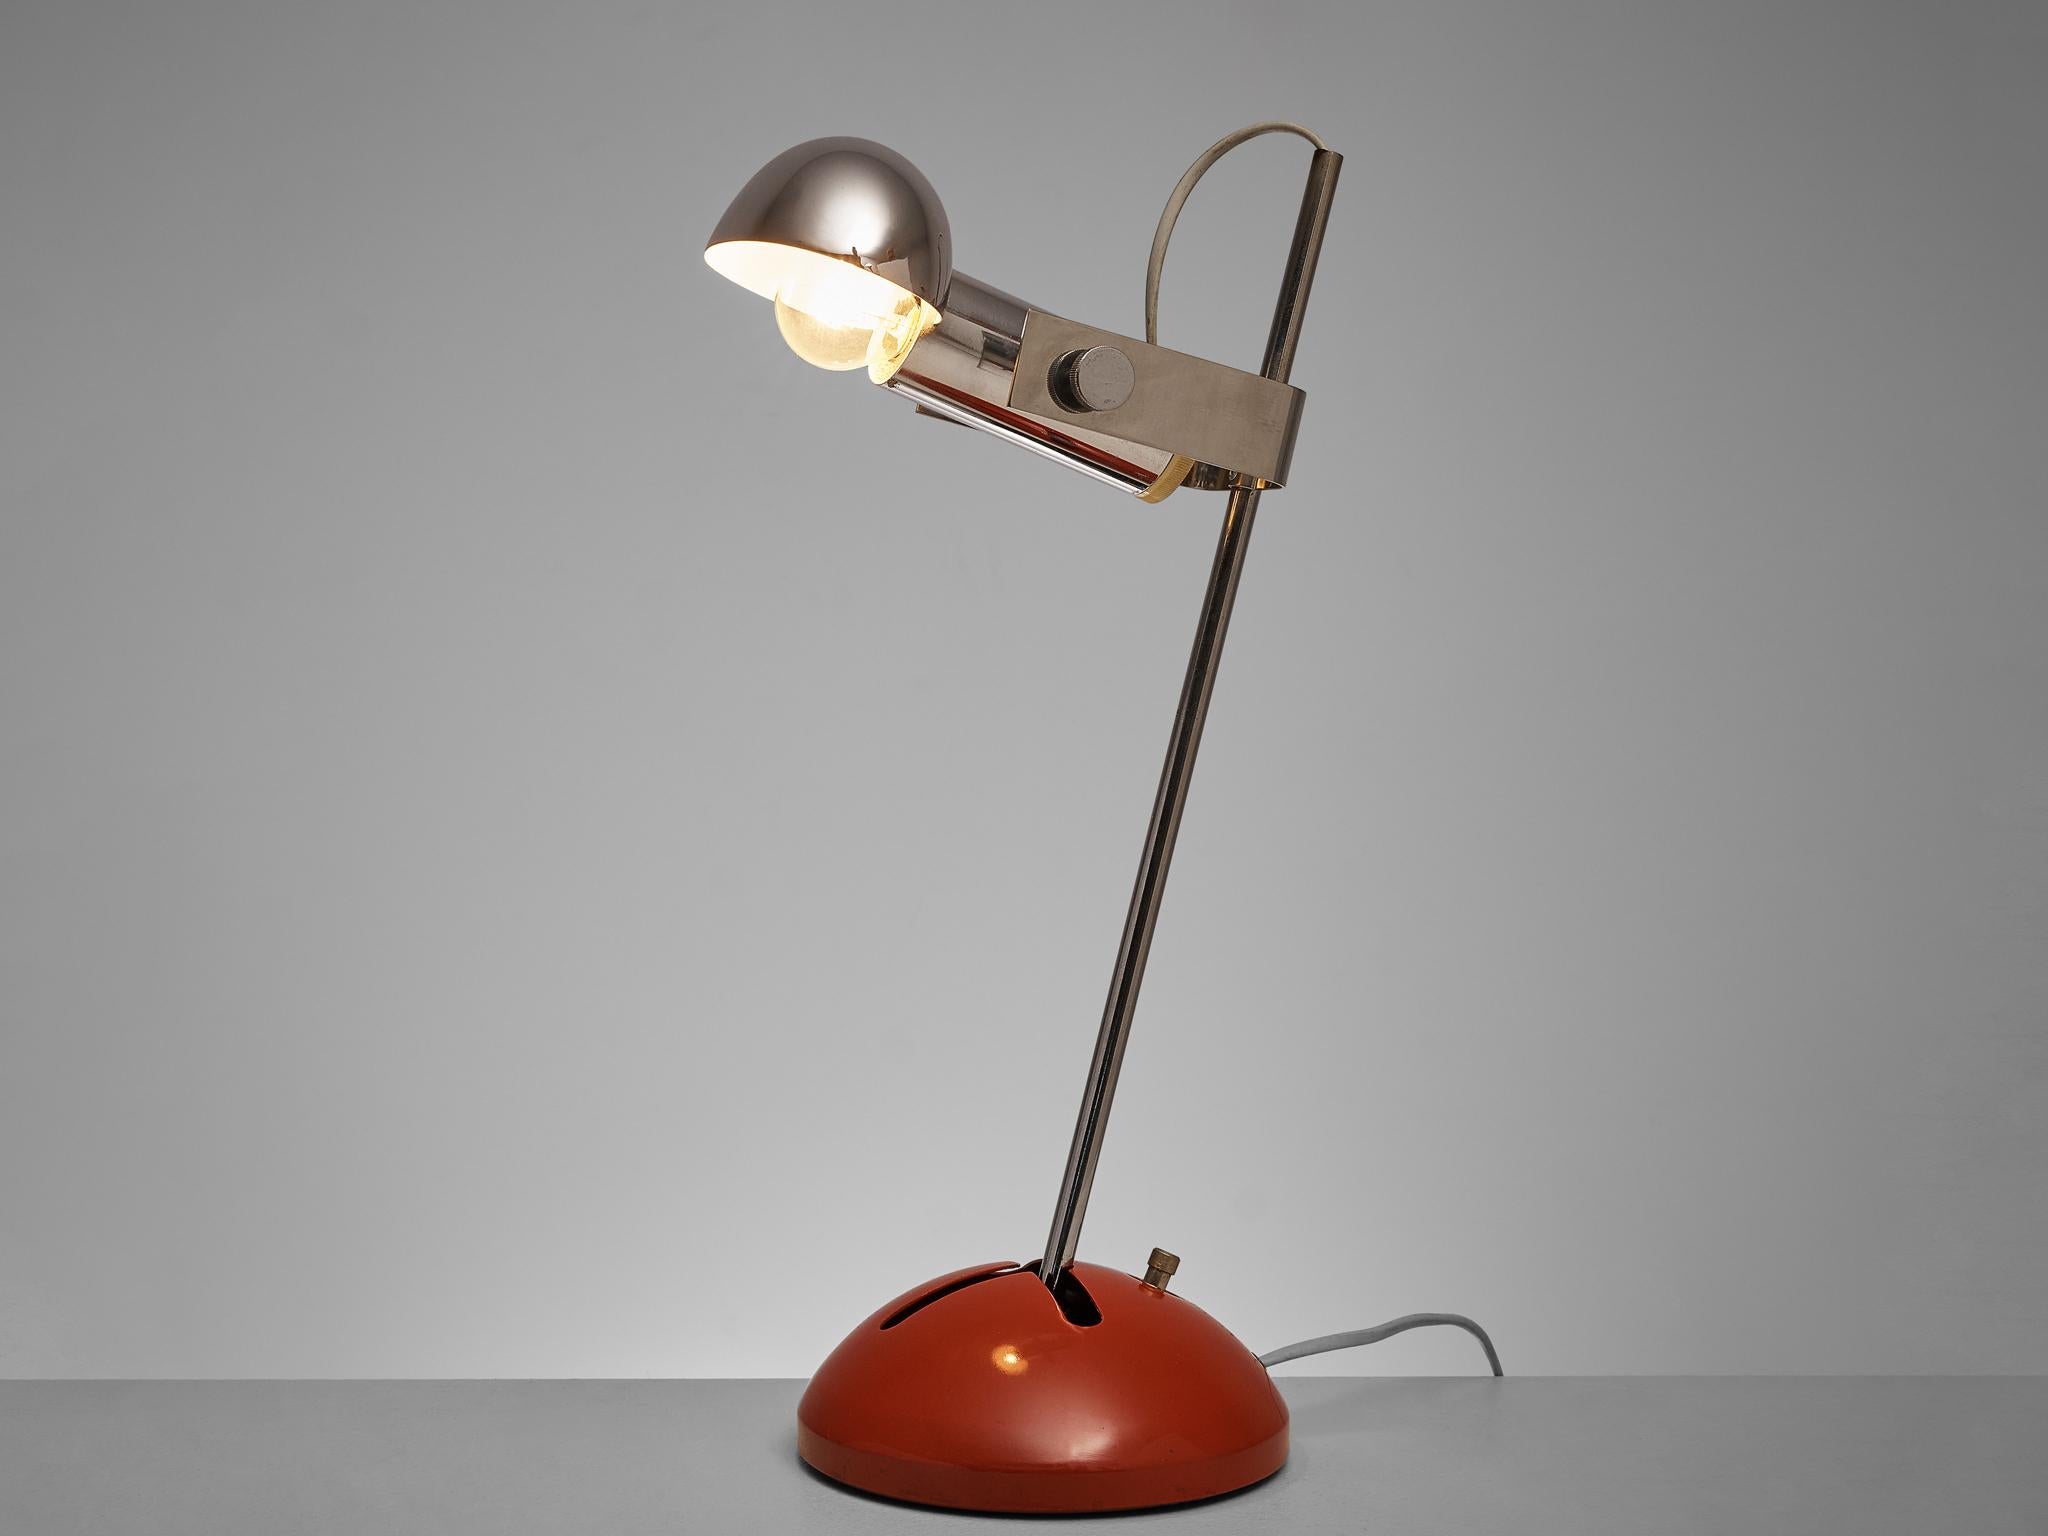 Robert Sonneman pour Luci Cinisello, lampe de table modèle 395, métal, chrome, Italie, années 1970.

Voici la lampe de bureau polyvalente modèle 395, une création de Robert Sonneman pour le célèbre fabricant italien Luci Cinisello. Cette lampe